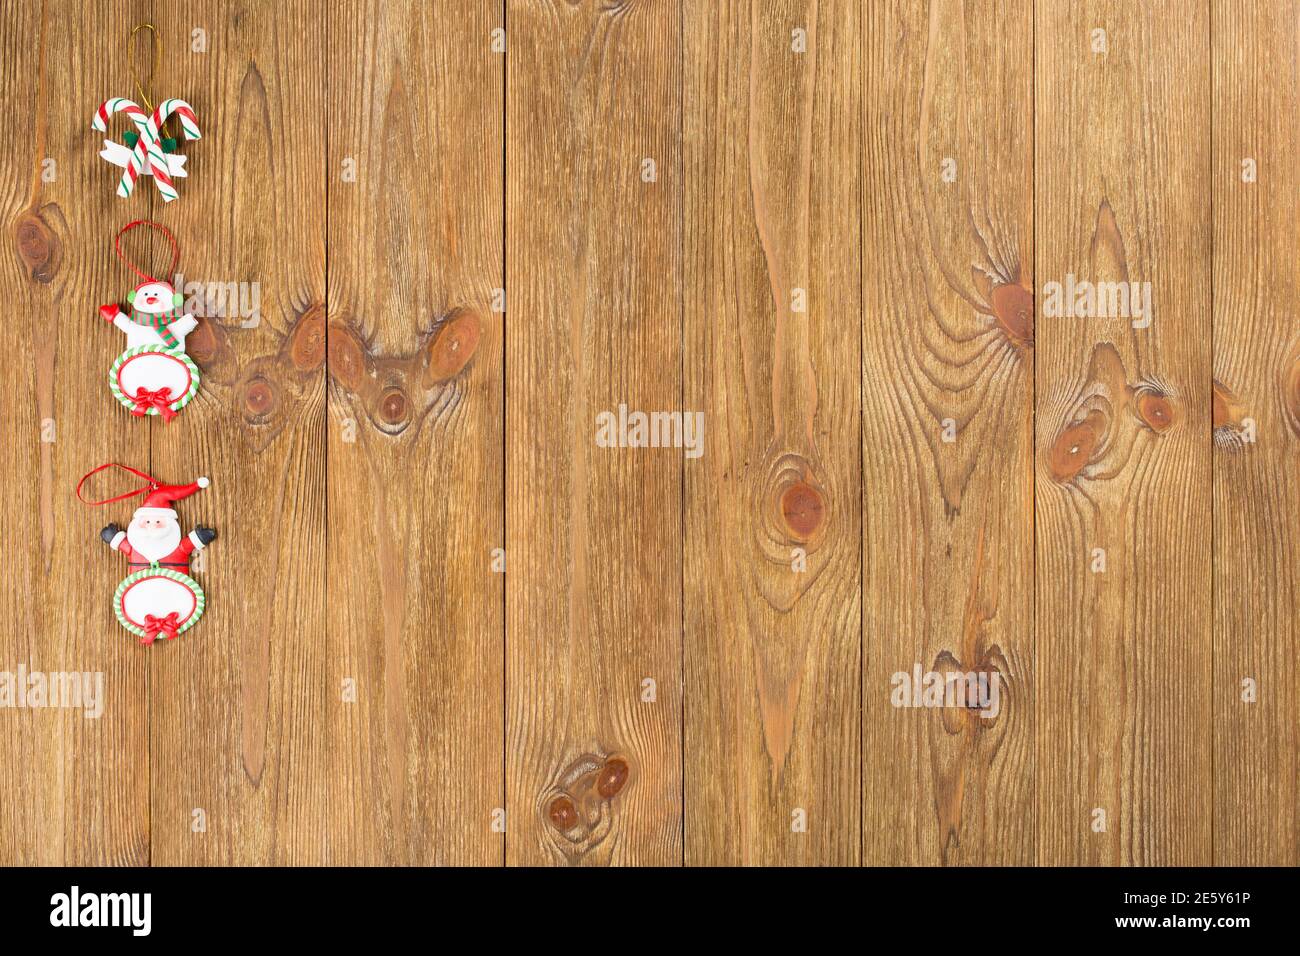 Le jouet de Noël est situé sur une surface en bois. Cette image peut être utilisée comme arrière-plan. Gros plan. Banque D'Images